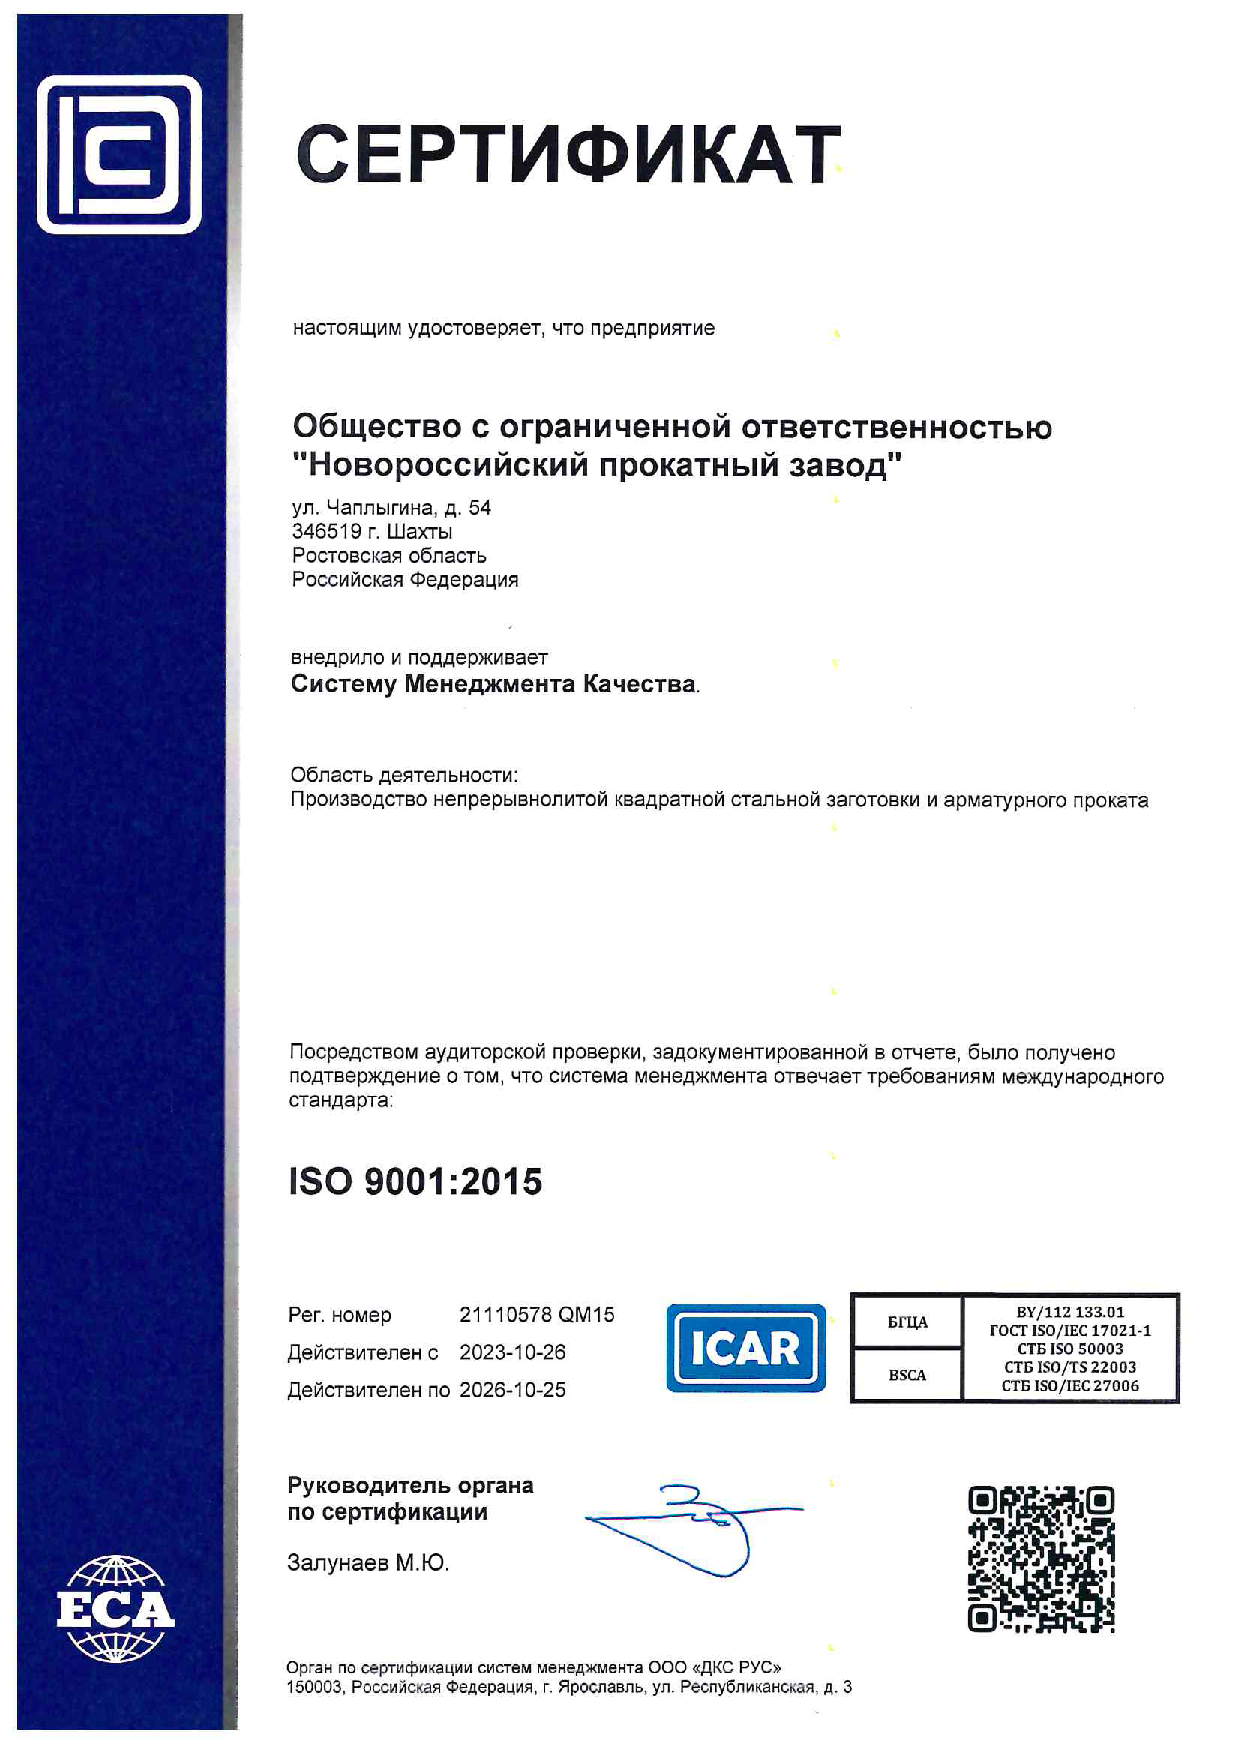 ISO 9001 : 2015 RU